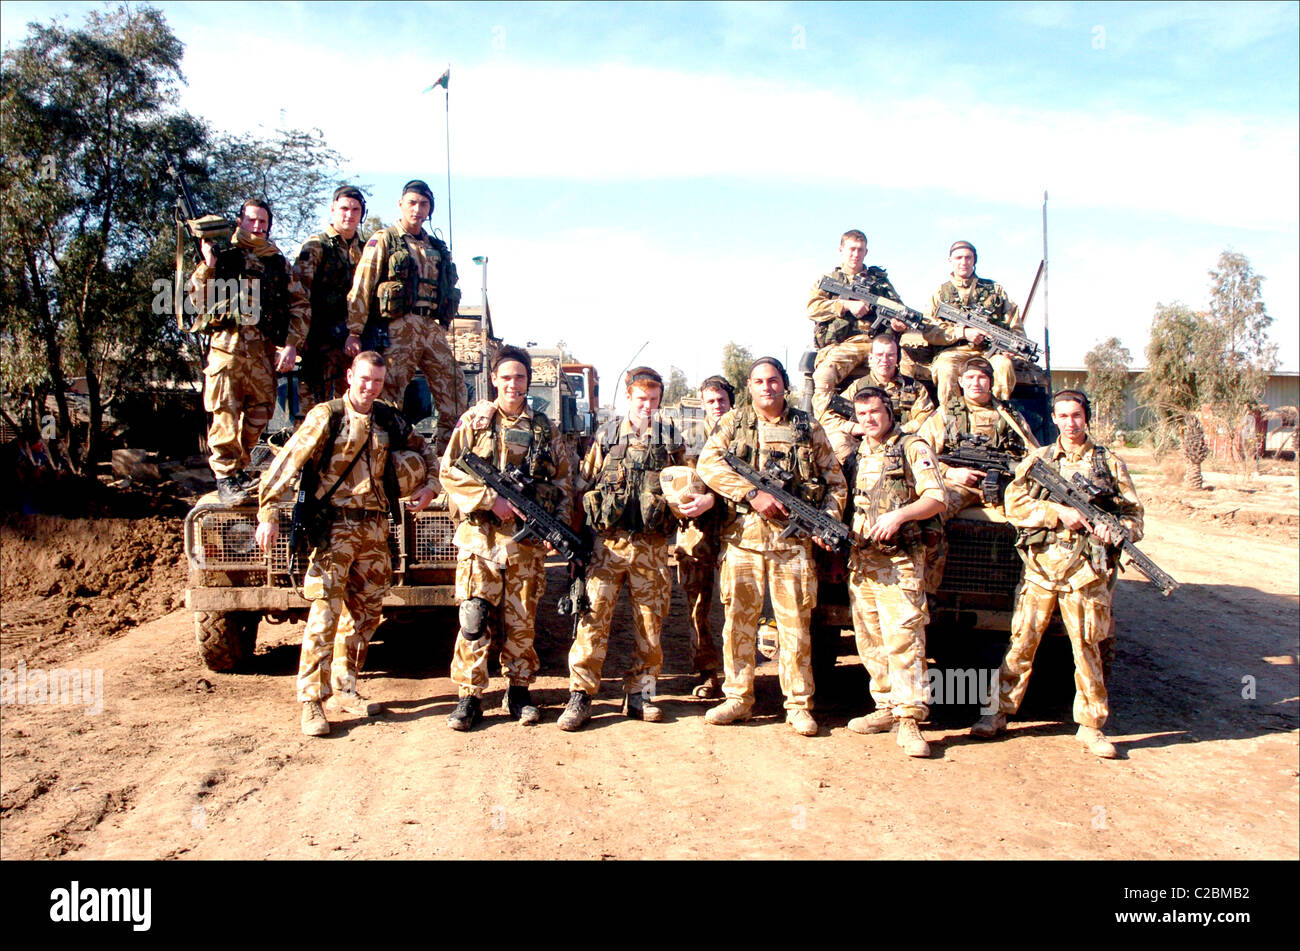 Esercito britannico Iraq soldato conflict desert camouflage munizioni pistola munizioni sa80 fucile custode di pace guerra bassora Foto Stock